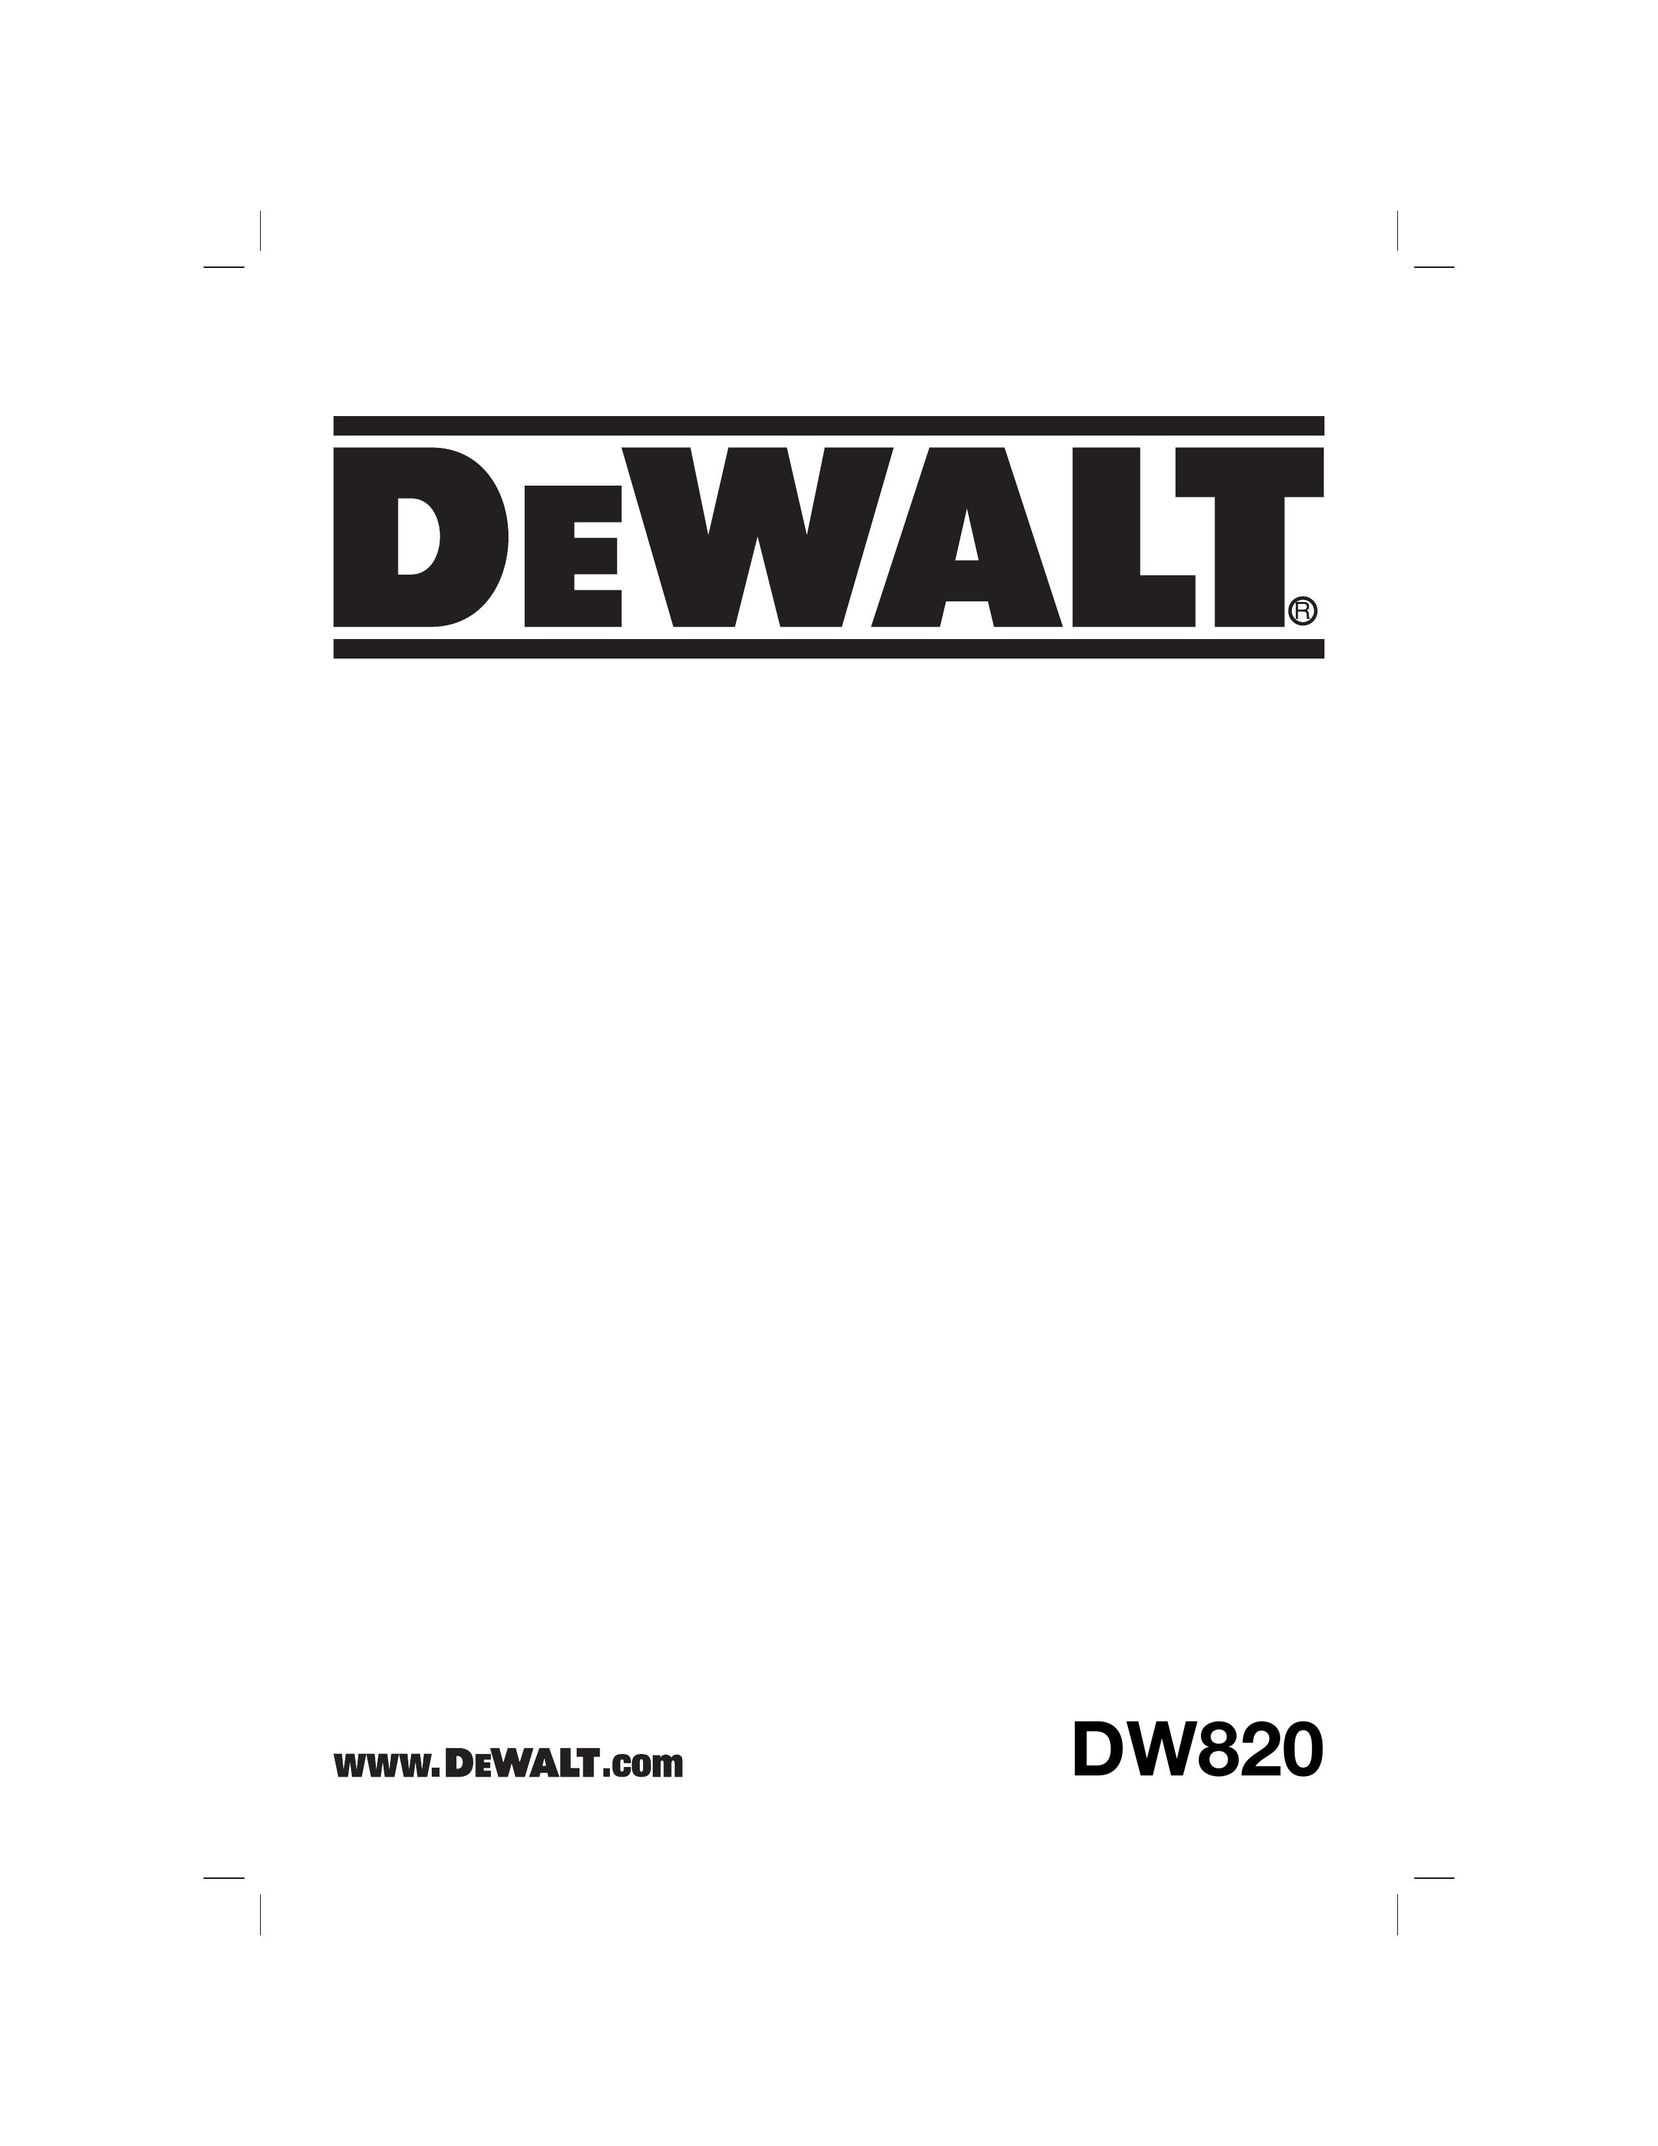 DeWalt DW820 Grinder User Manual